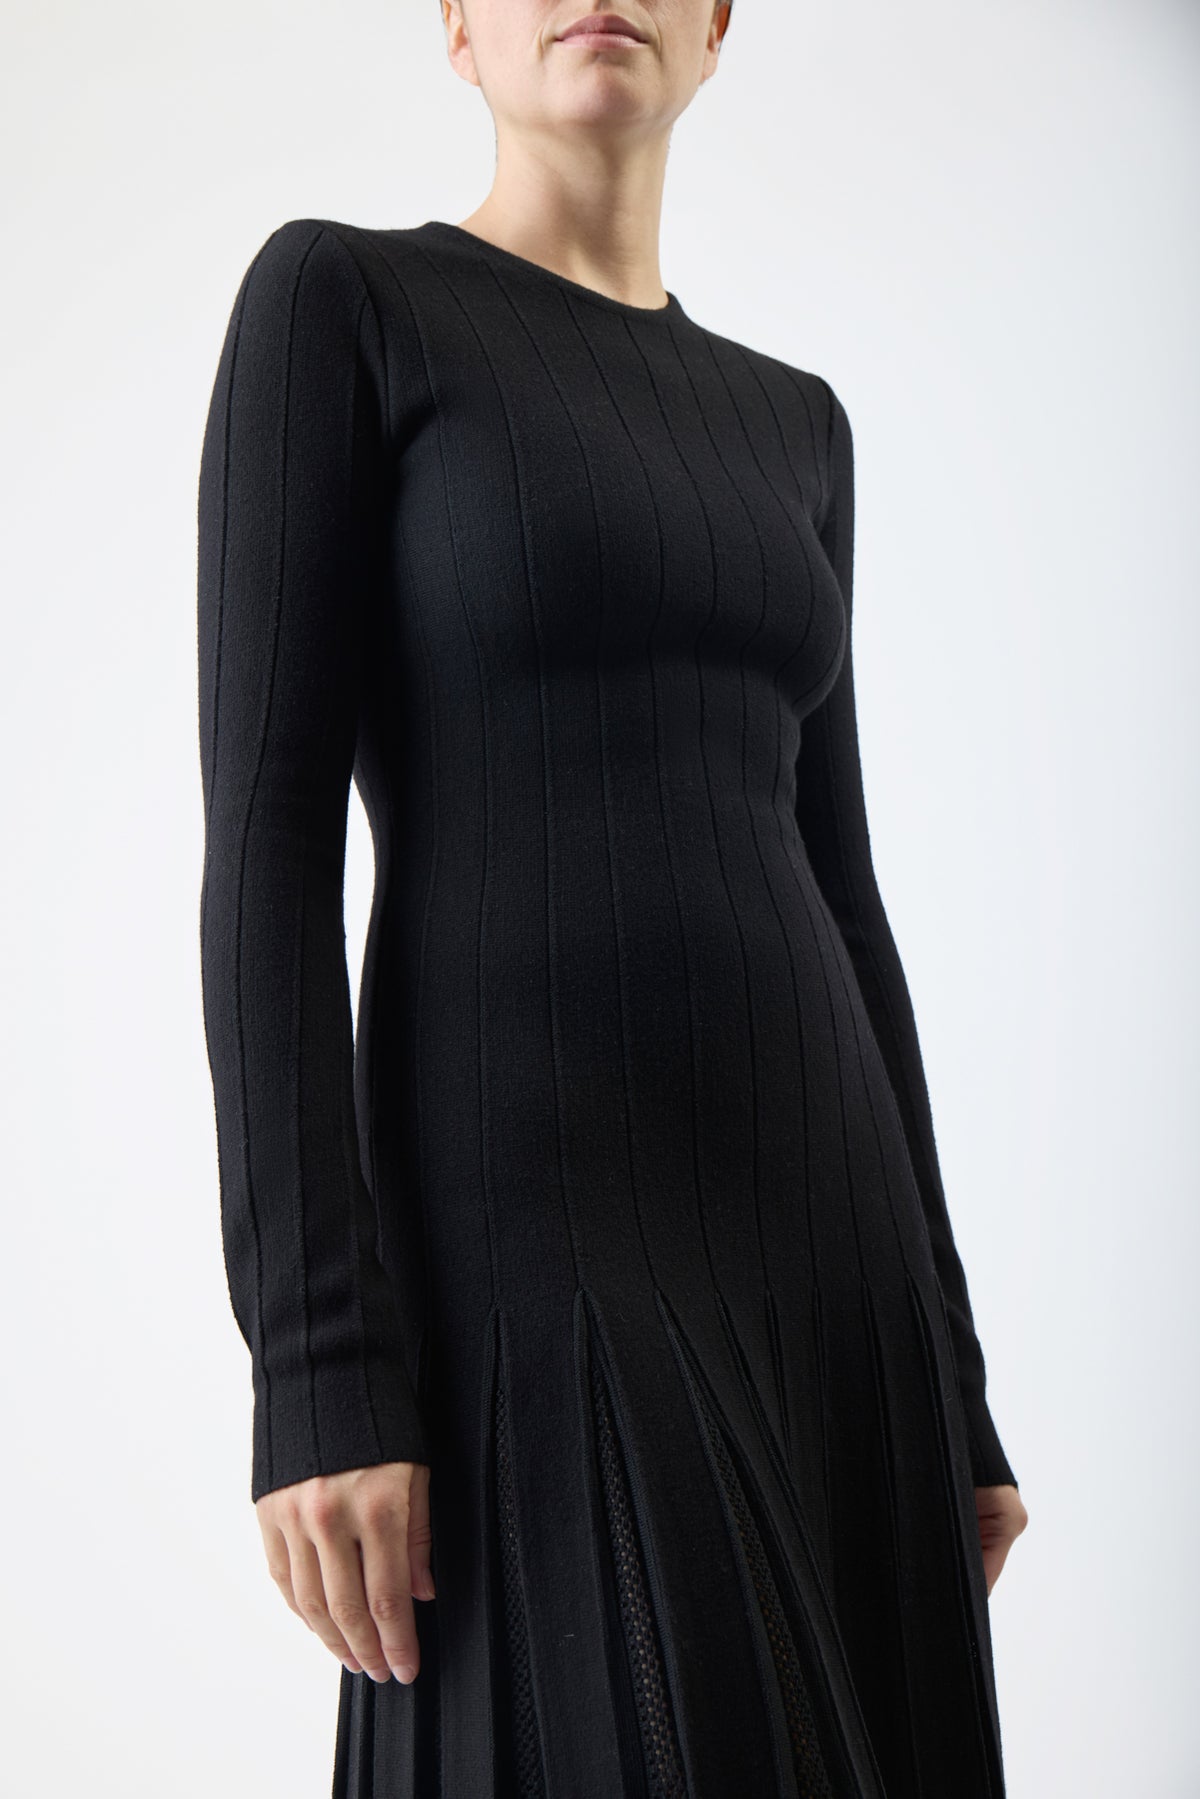 Walsh Pleated Knit Dress in Black Wool